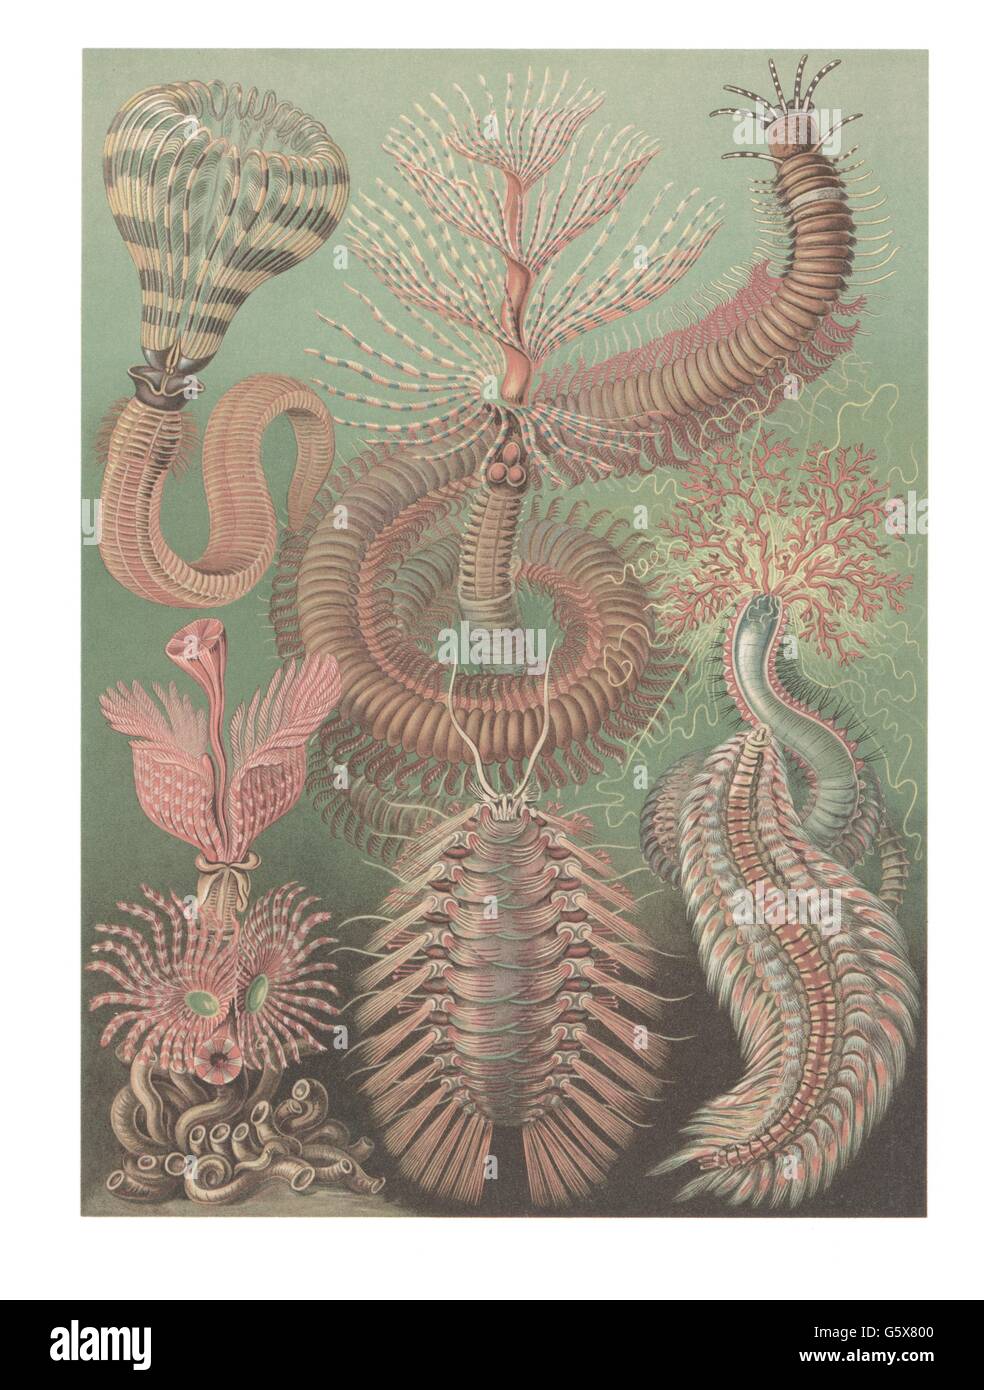 zoologie / animaux, annélides, vers de soie (Polyhaeta), lithographie de couleur, de: Ernst Haeckel, 'Kunstformen der Natur', Leipzig - Vienne, 1899 - 1904, droits additionnels-Clearences-non disponible Banque D'Images